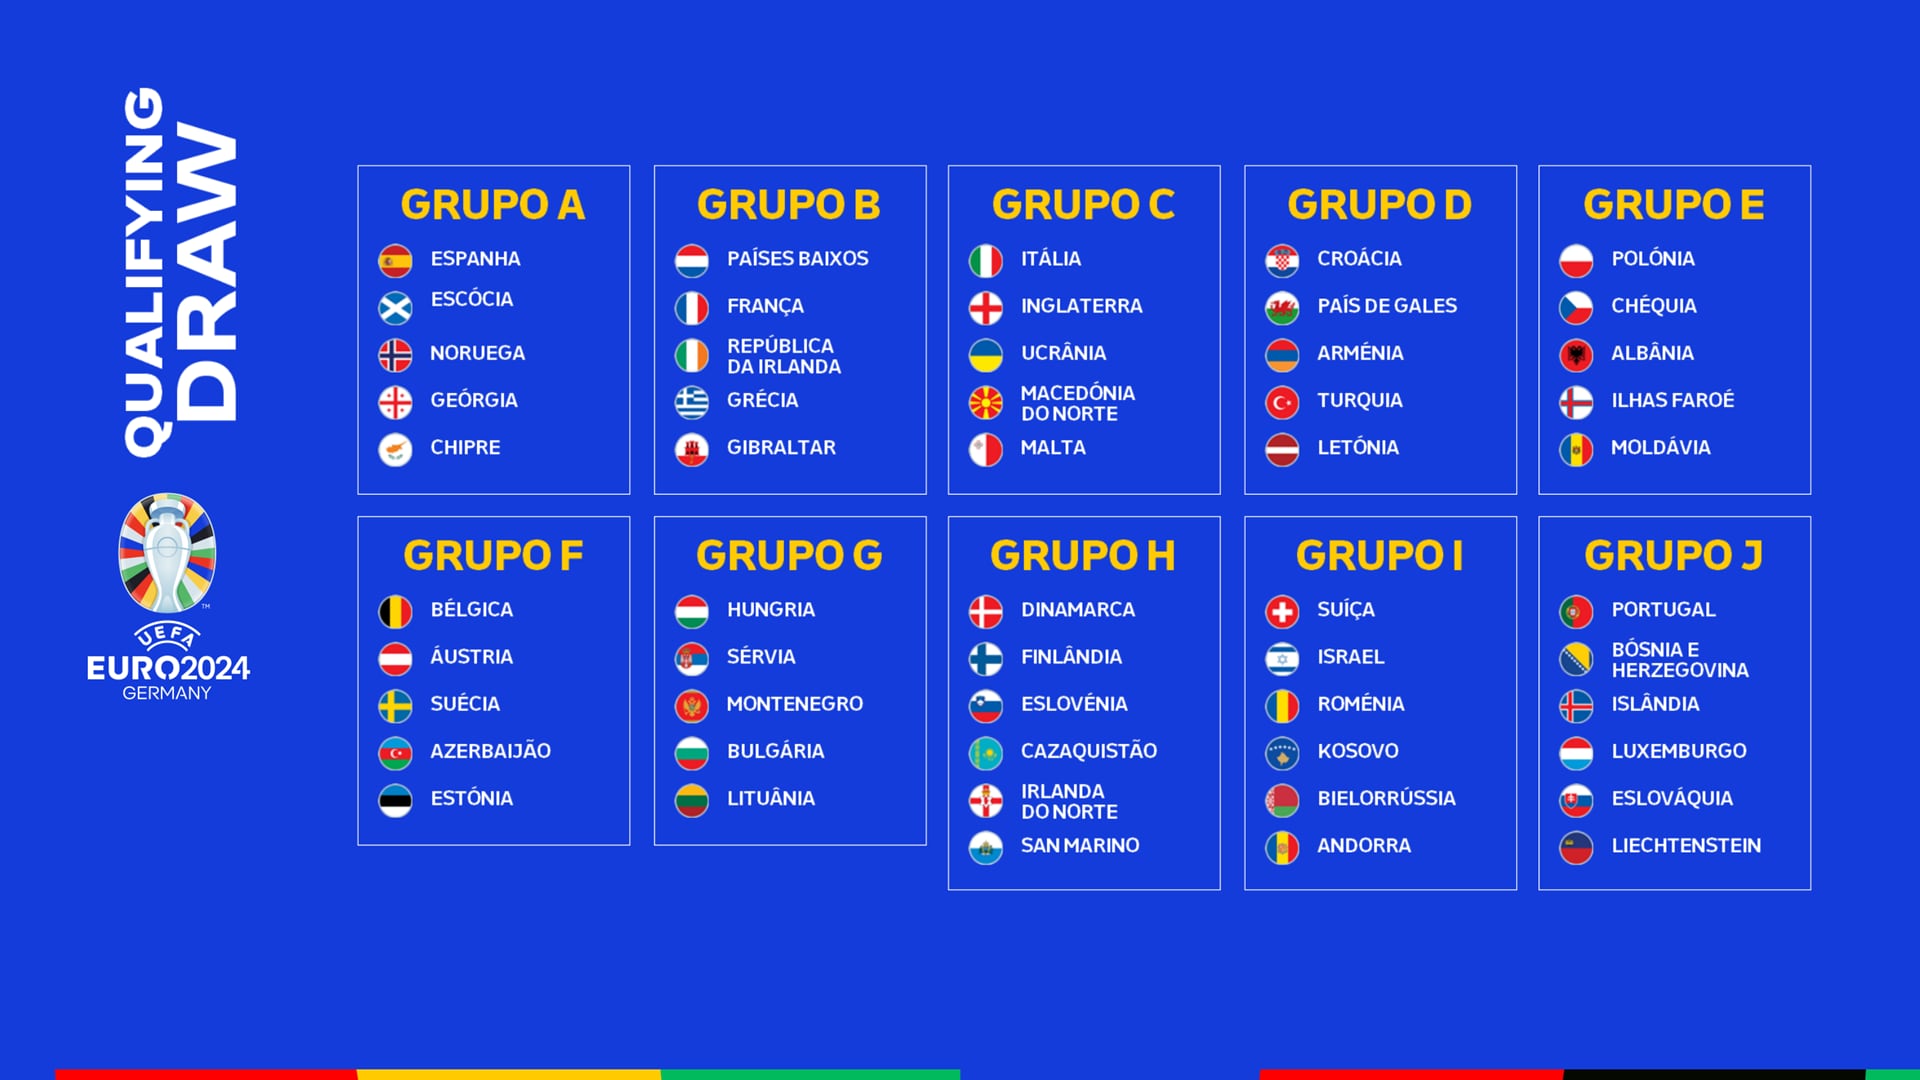 アフリカネイションズカップ2019予選・グループE